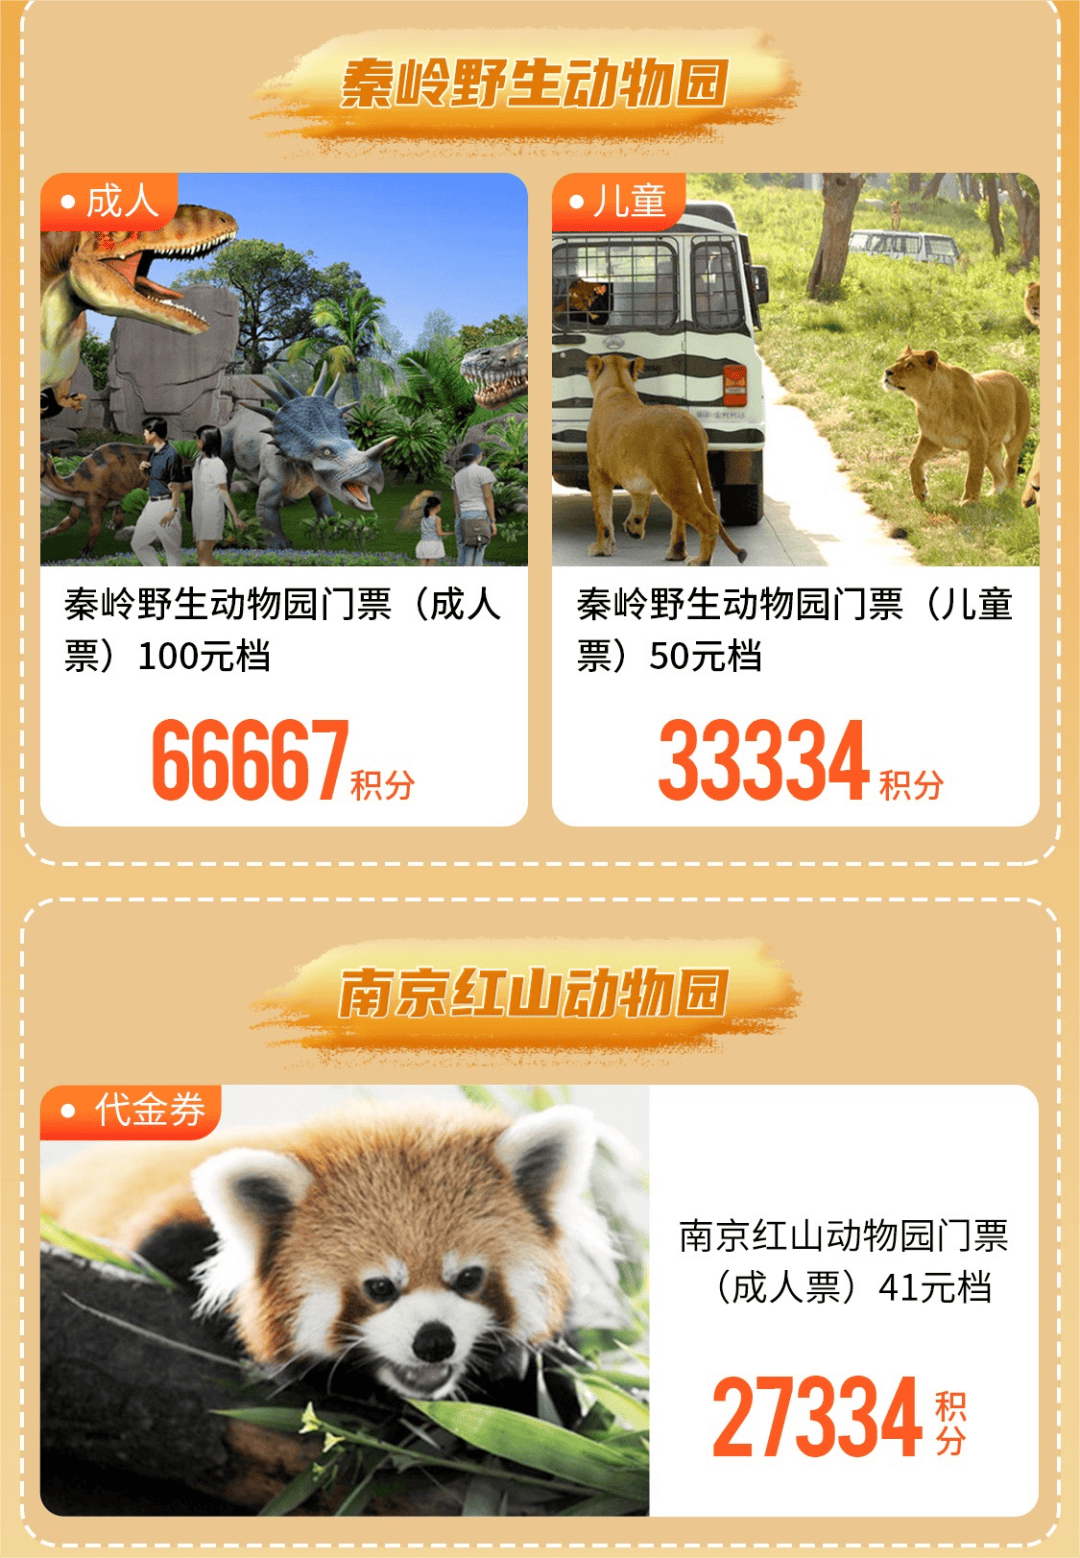 低至27334积分兑换南京红山动物园门票热门乐园门票兑换券焕新上线!